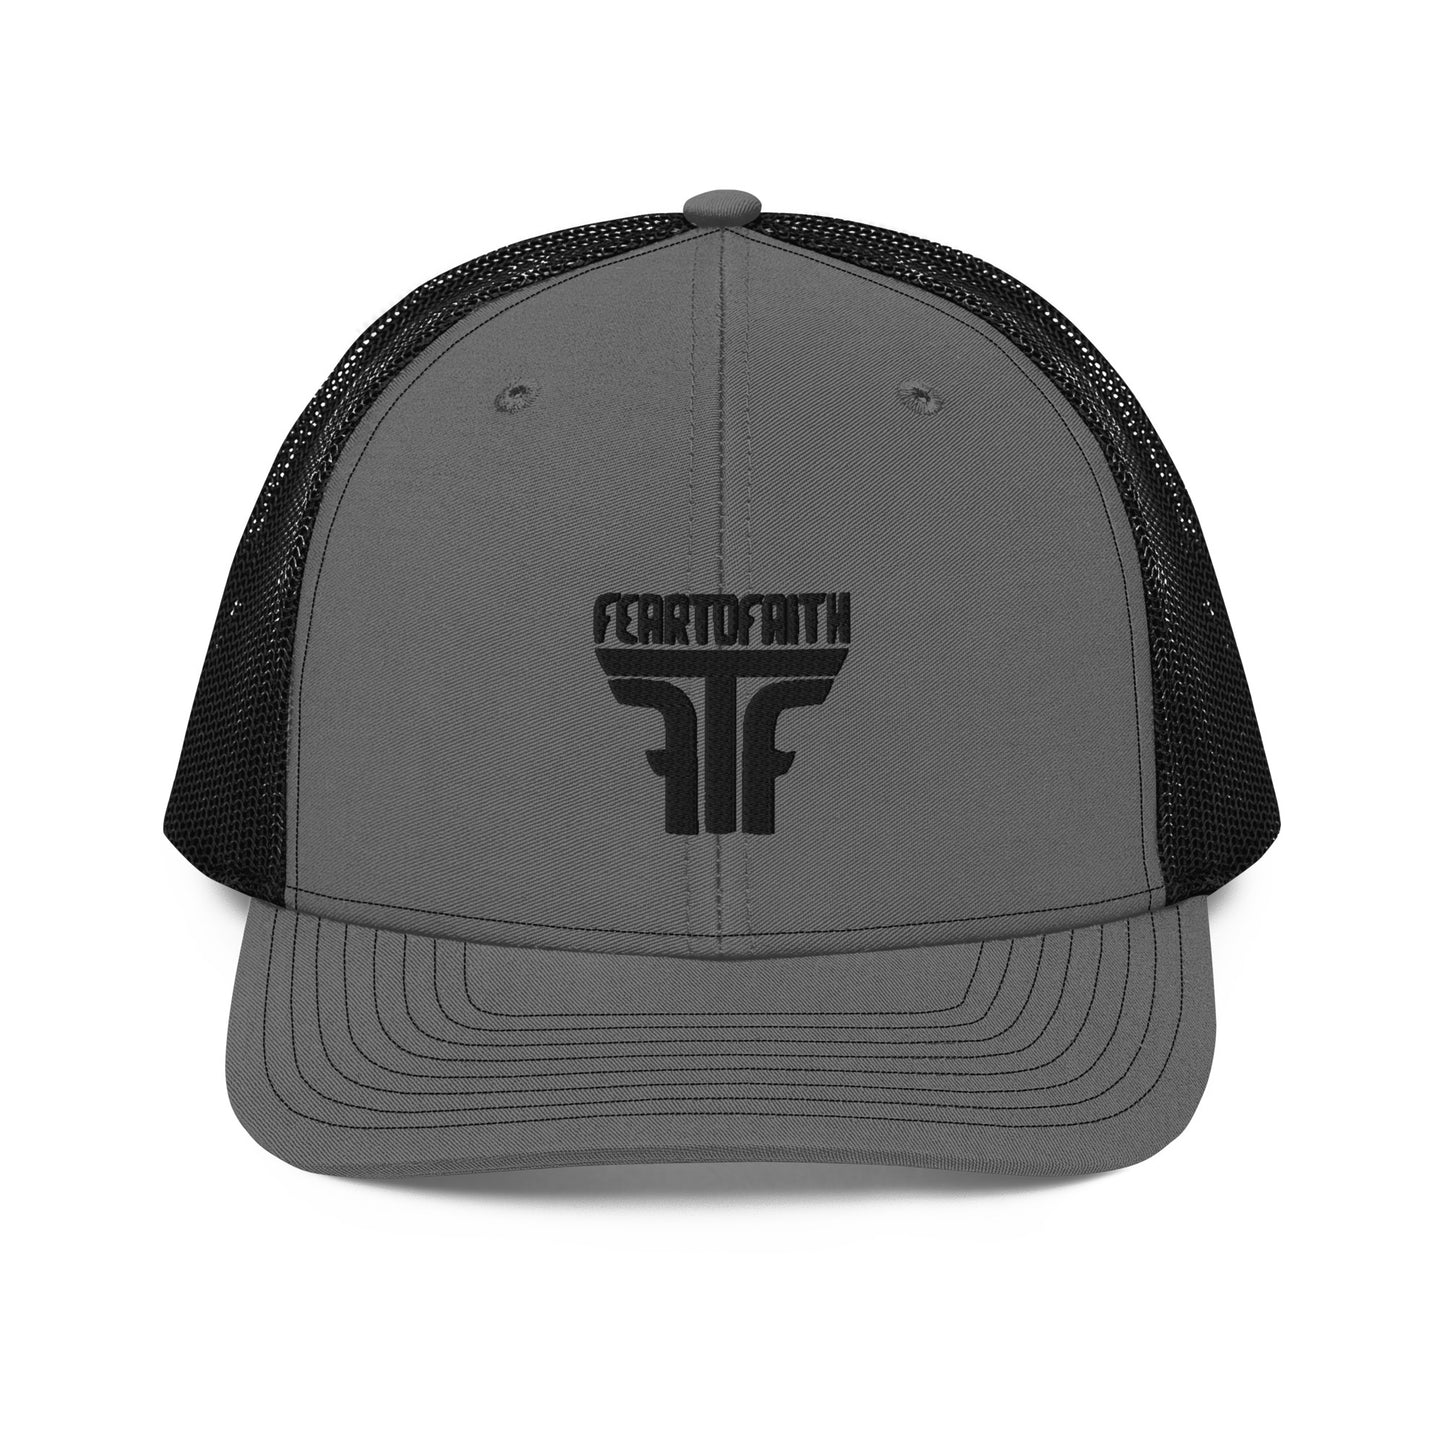 FTF STAPLE - Trucker Cap